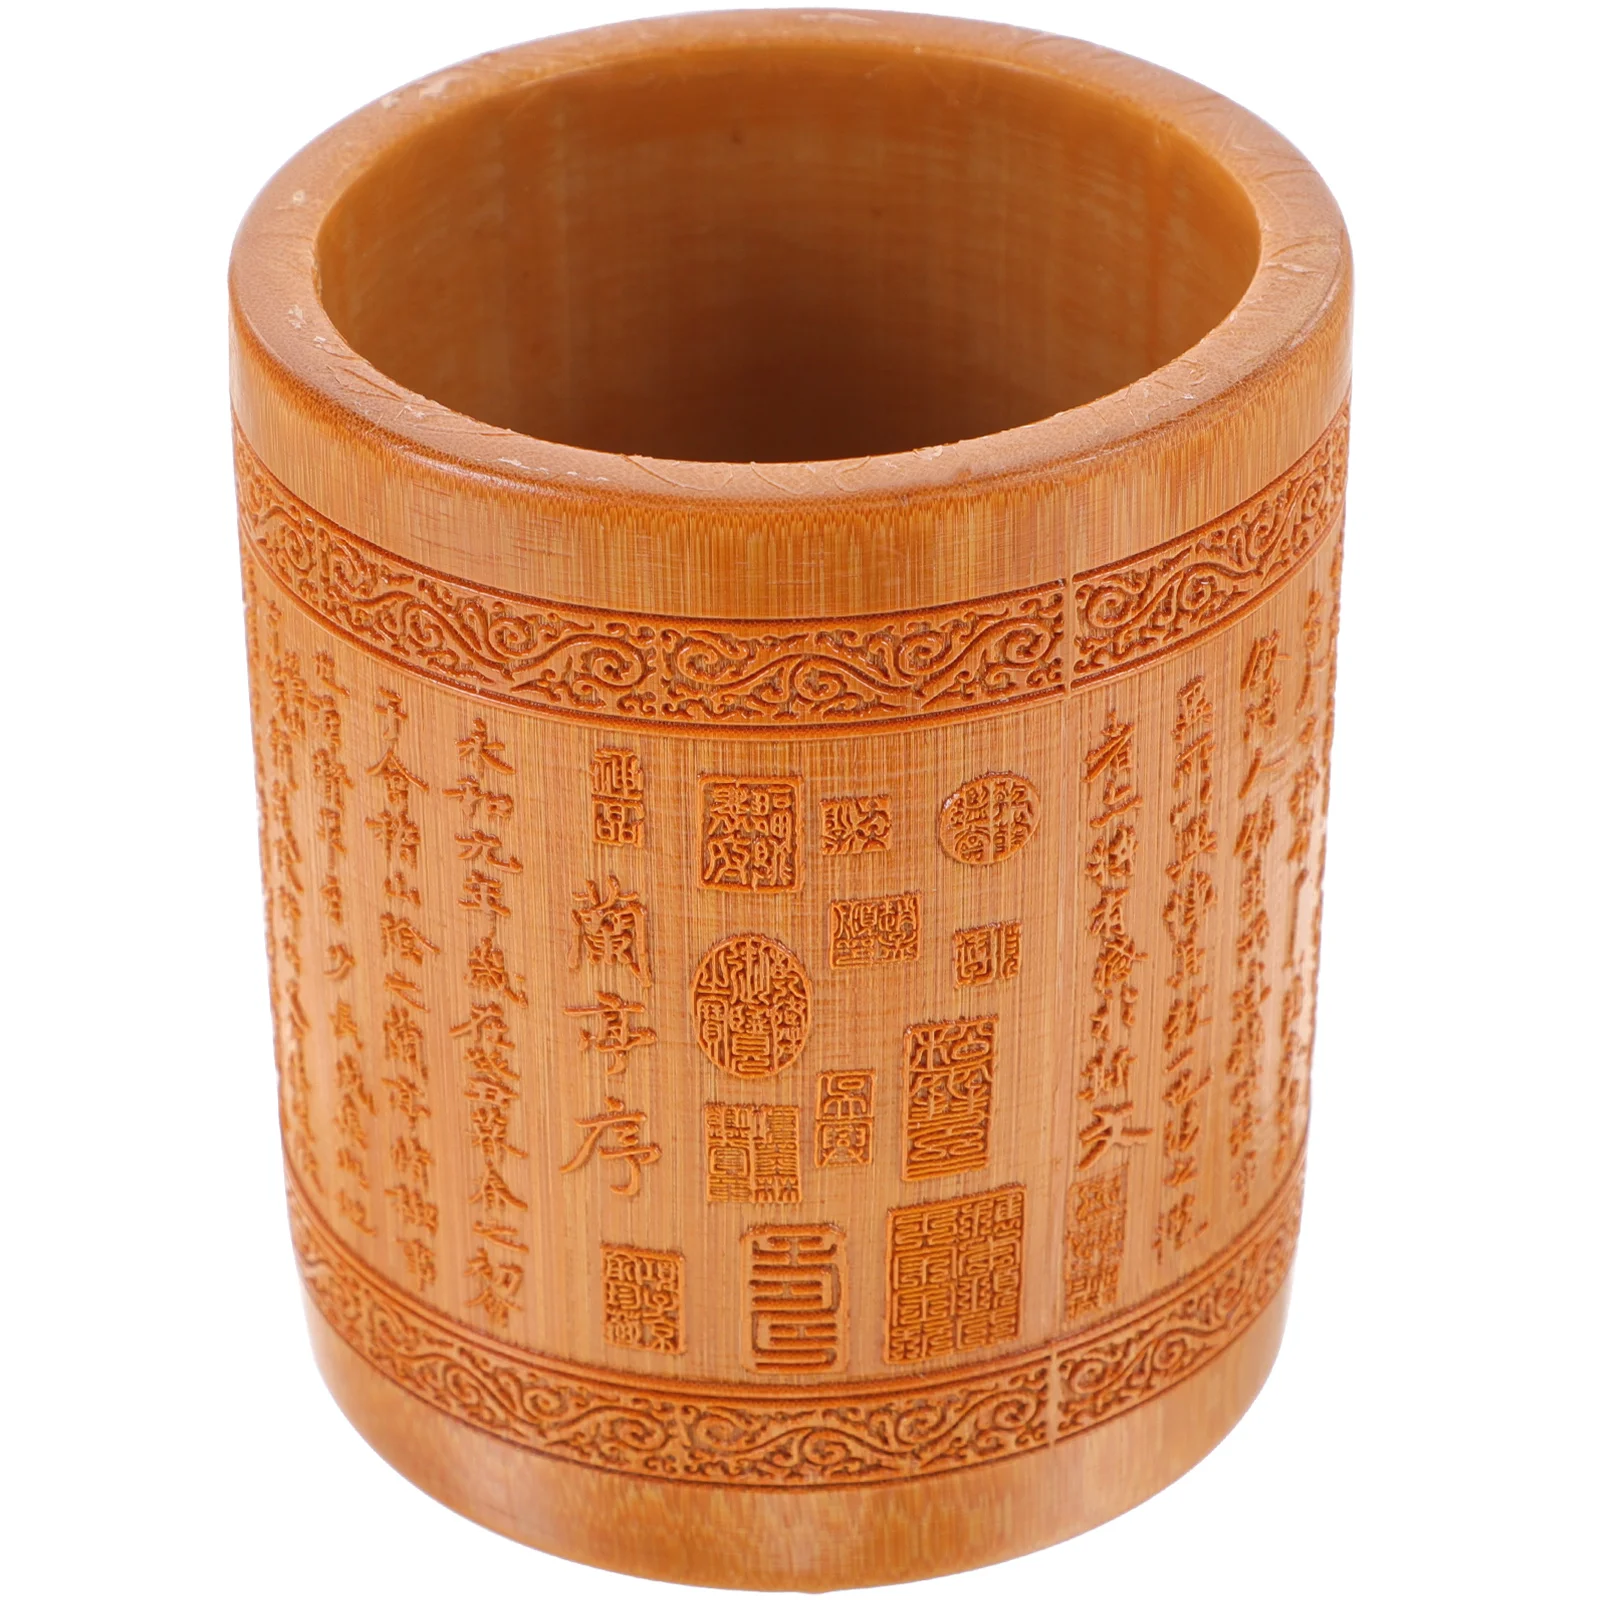 

Бамбуковый горшок для ручек в китайском стиле, цилиндрический фотографический горшок